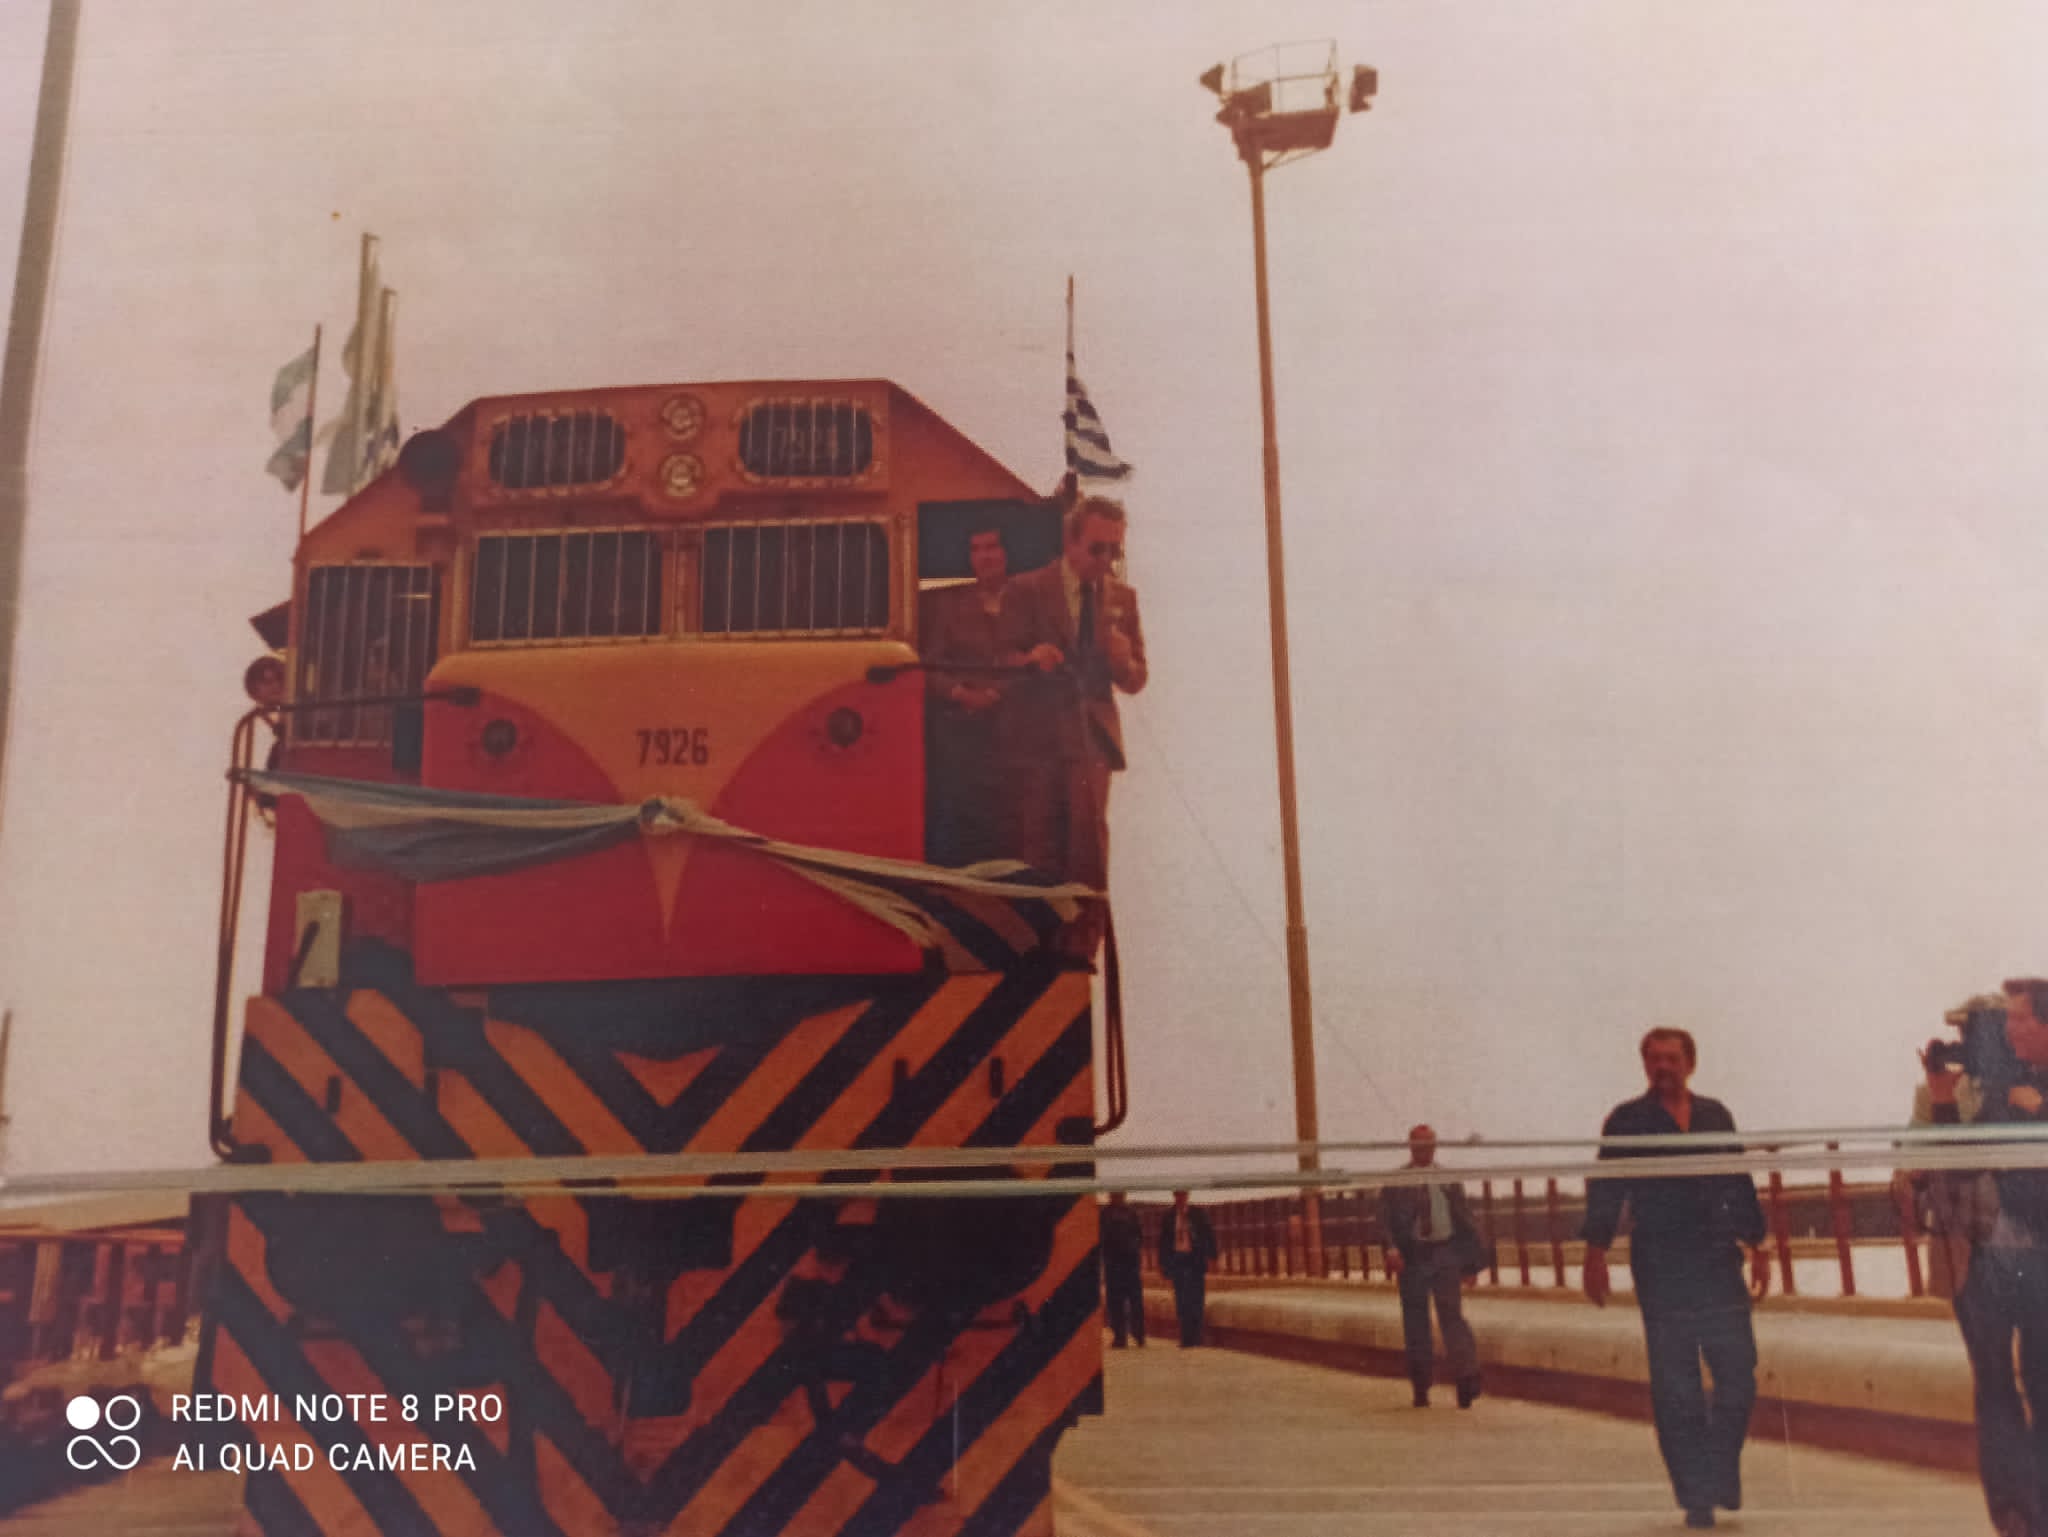 Álbum Ferrocarril Midland y Ferrocarril del Norte - Montevideo Antiguo